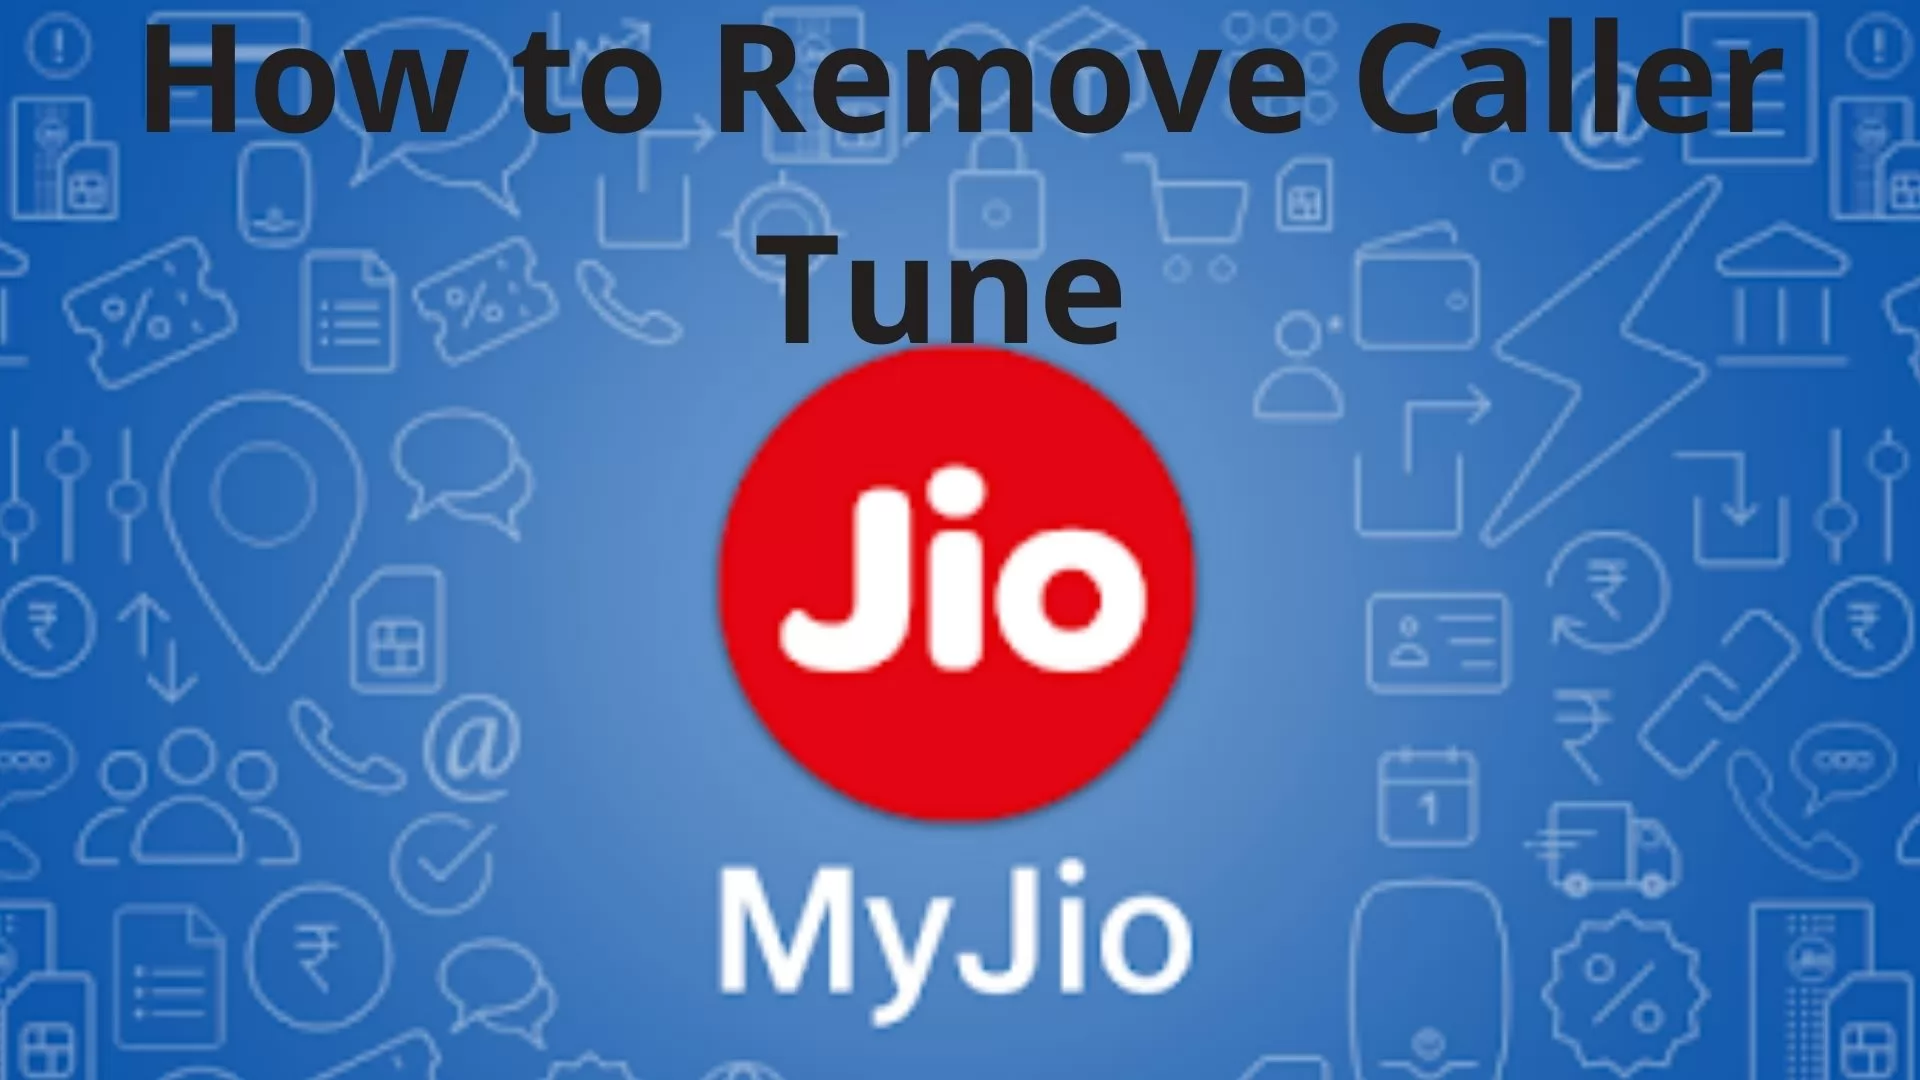 How to Deactivate Jio Caller Tune?